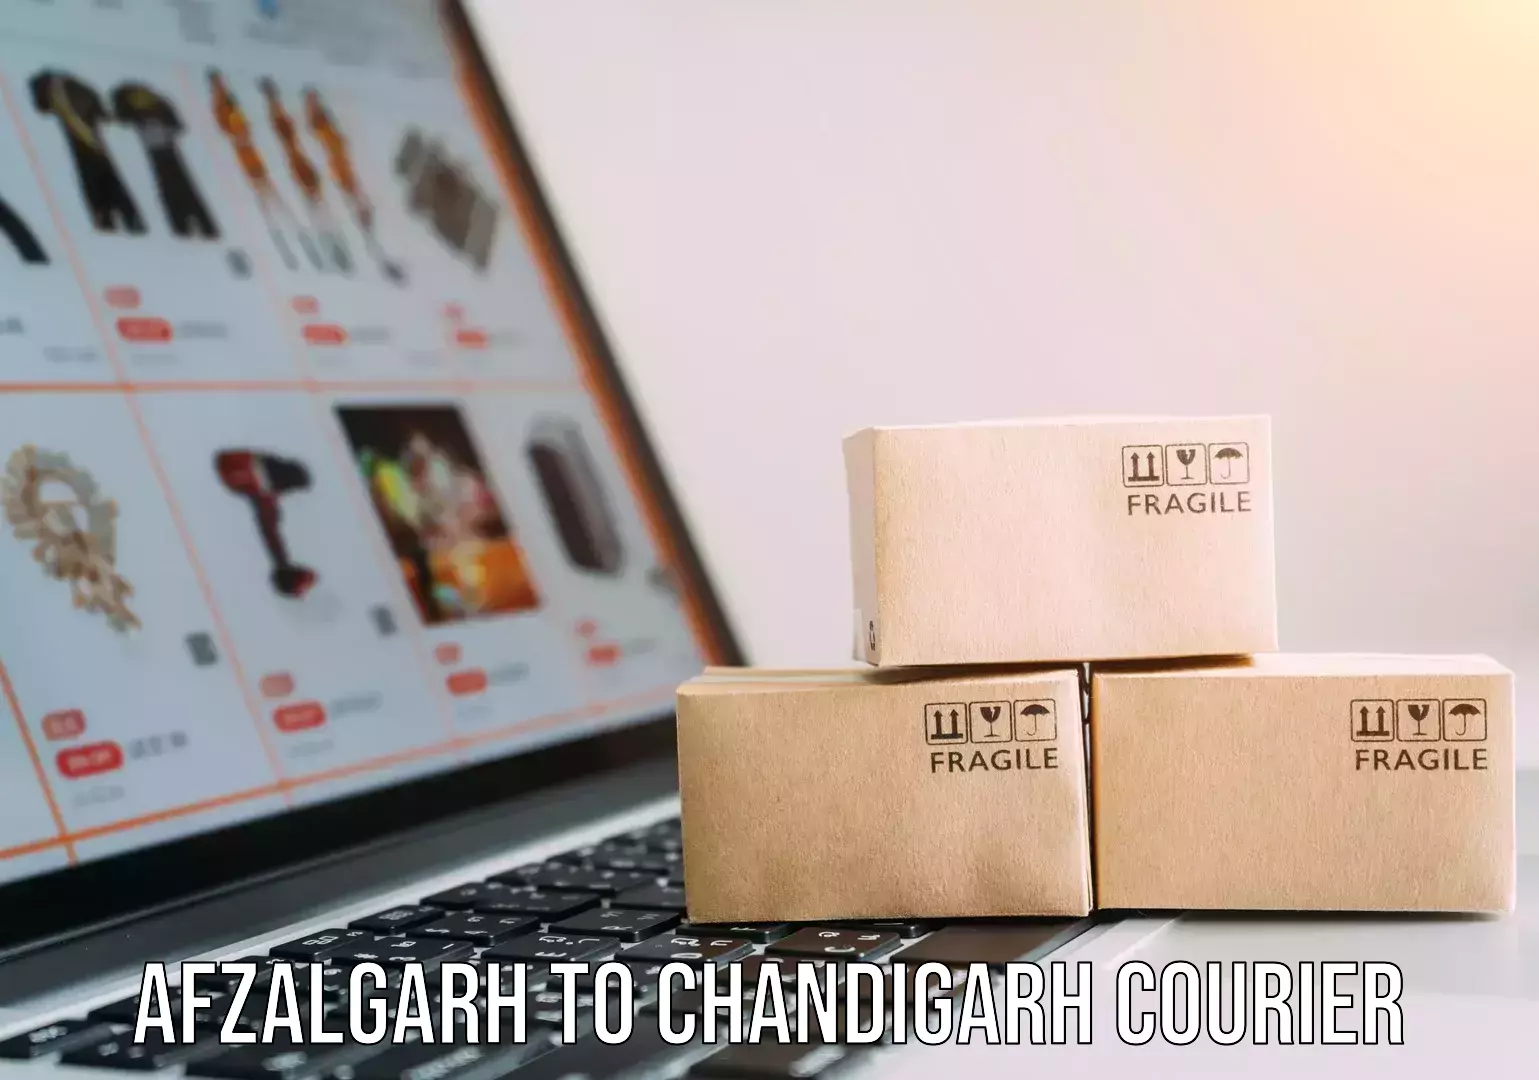 Digital courier platforms Afzalgarh to Chandigarh